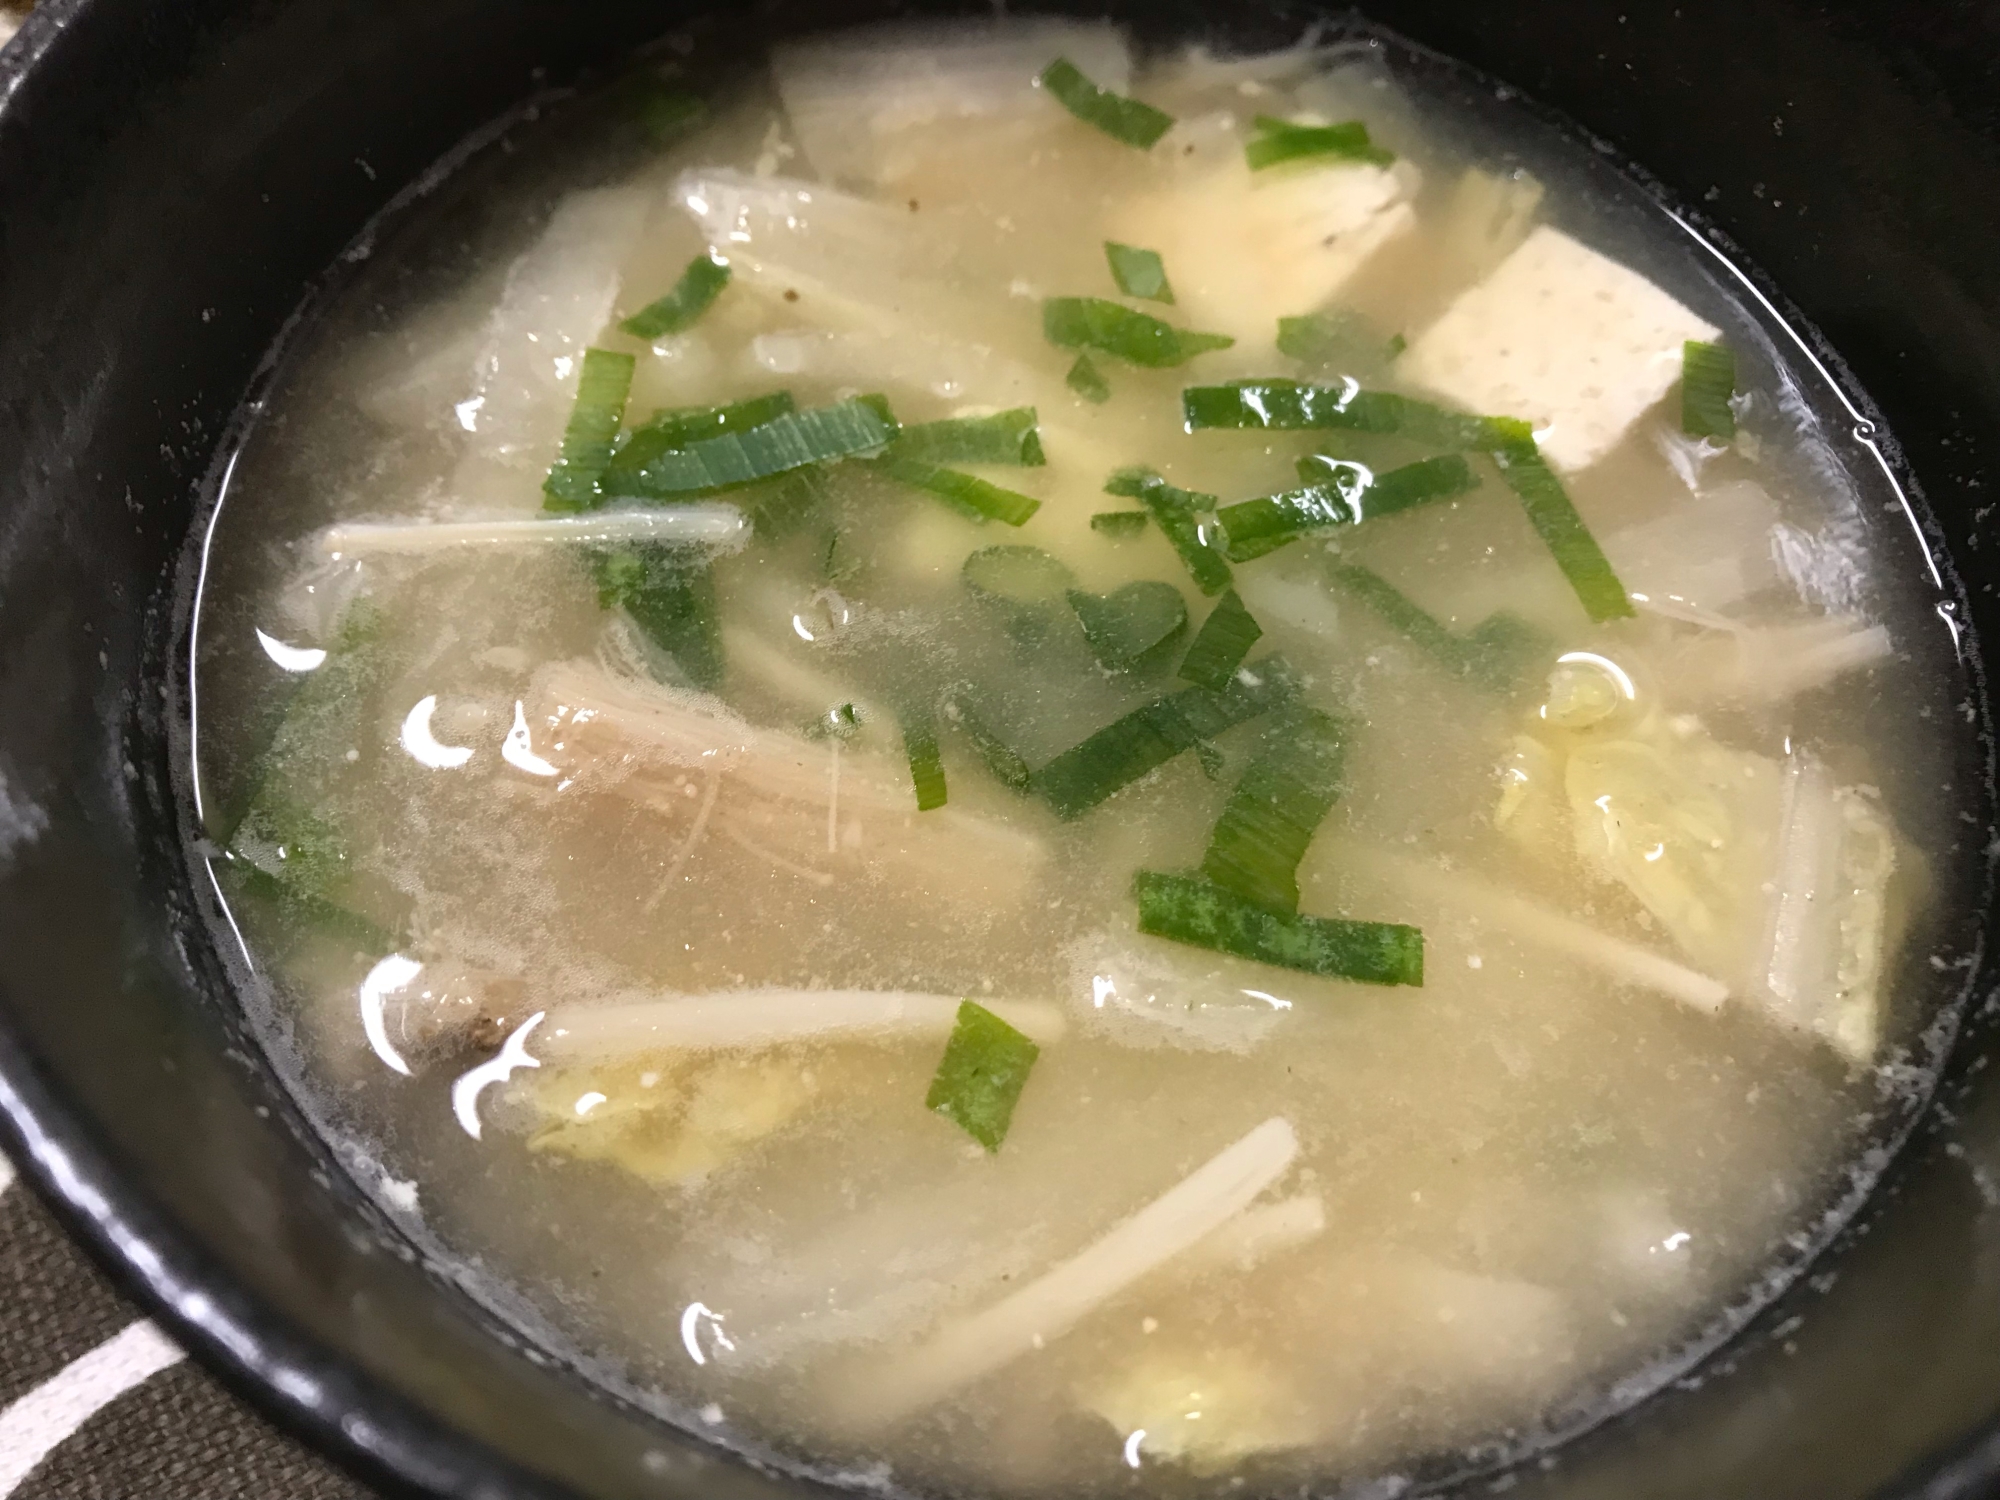 豆腐&白菜&えのきの味噌汁